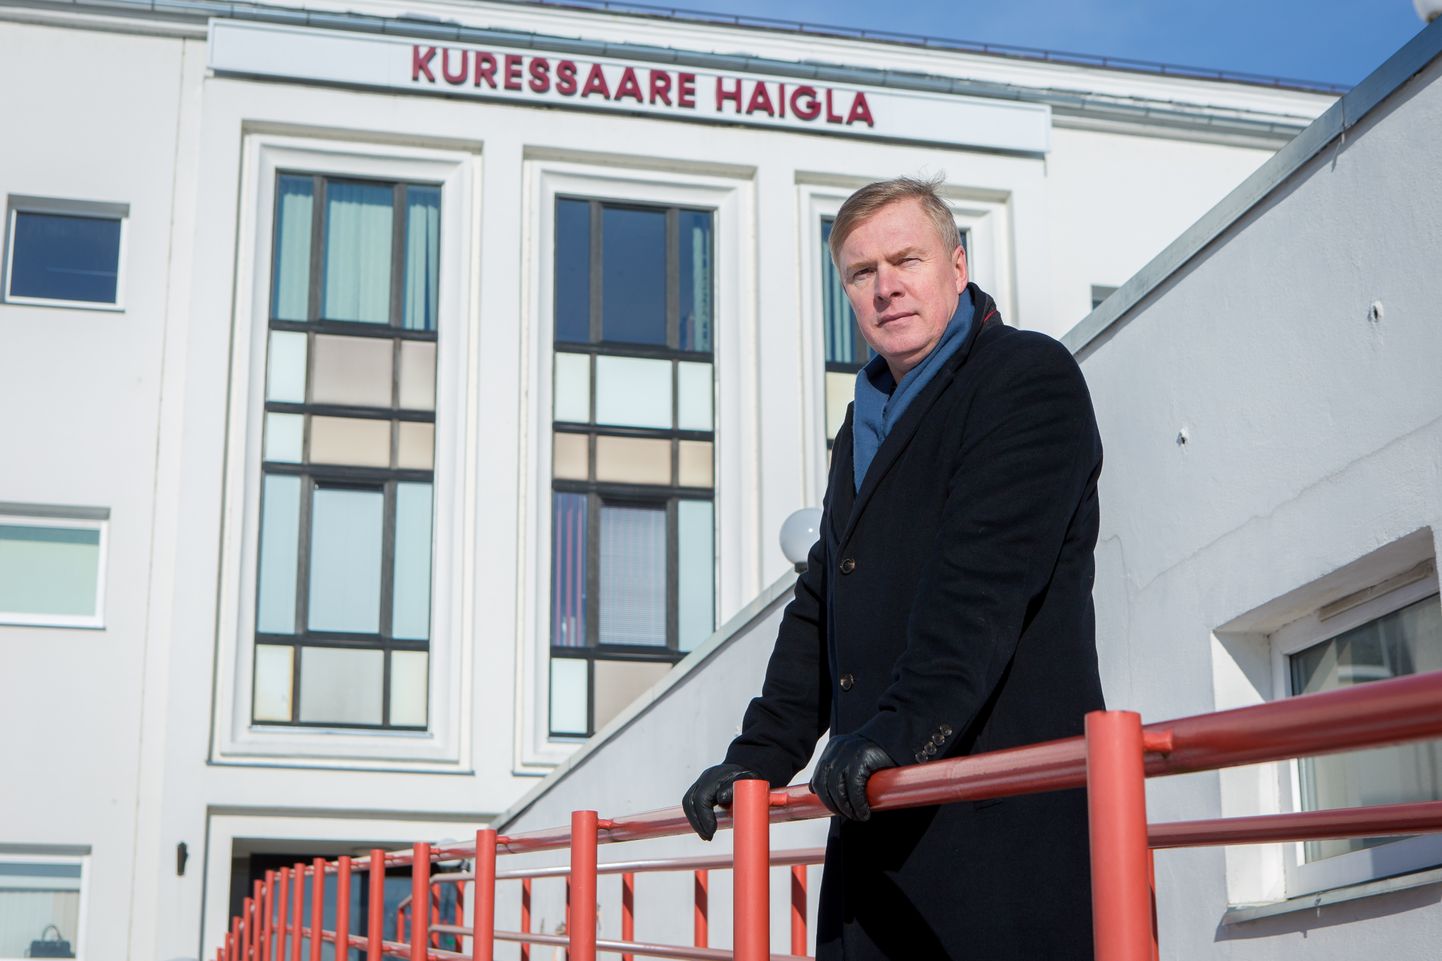 INIMENE ON TÄHTIS: Kalle Laanet leiab, et rohkem tuleb investeerida haigla töötajatesse.